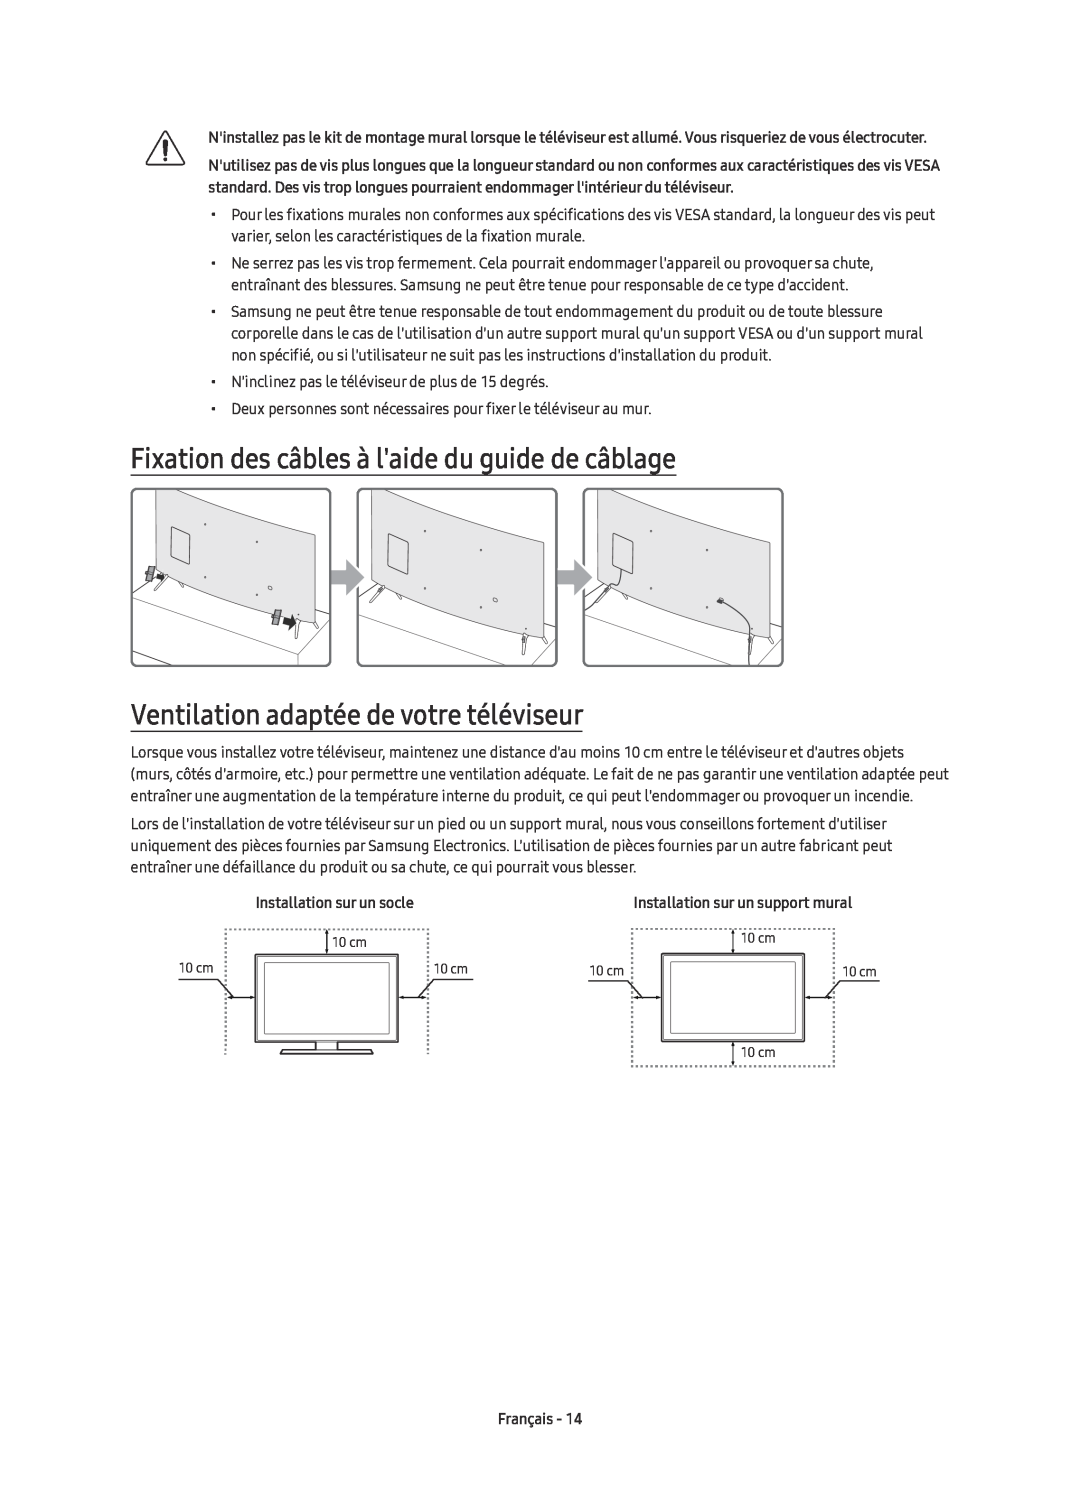 Samsung UE55KU6510UXZG Fixation des câbles à laide du guide de câblage, Ventilation adaptée de votre téléviseur, Français 